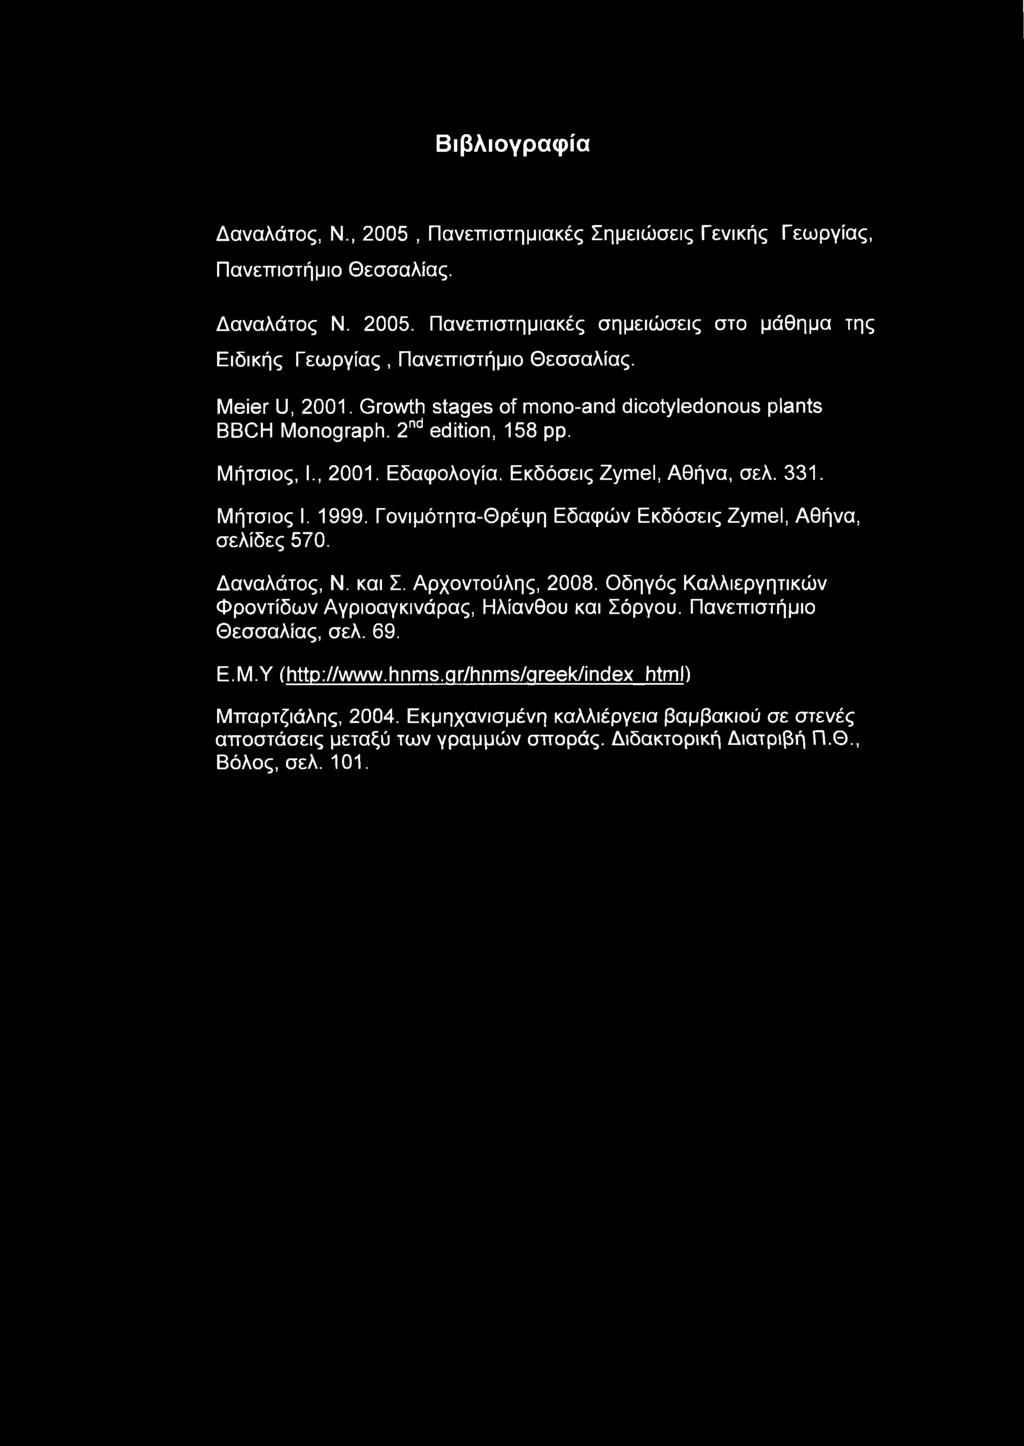 Γονιμότητα-Θρέψη Εδαφών Εκδόσεις Zymel, Αθήνα, σελίδες 570. Δαναλάτος, Ν. και Σ. Αρχοντούλης, 2008. Οδηγός Καλλιεργητικών Φροντίδων Αγριοαγκινάρας, Ηλίανθου και Σόργου.